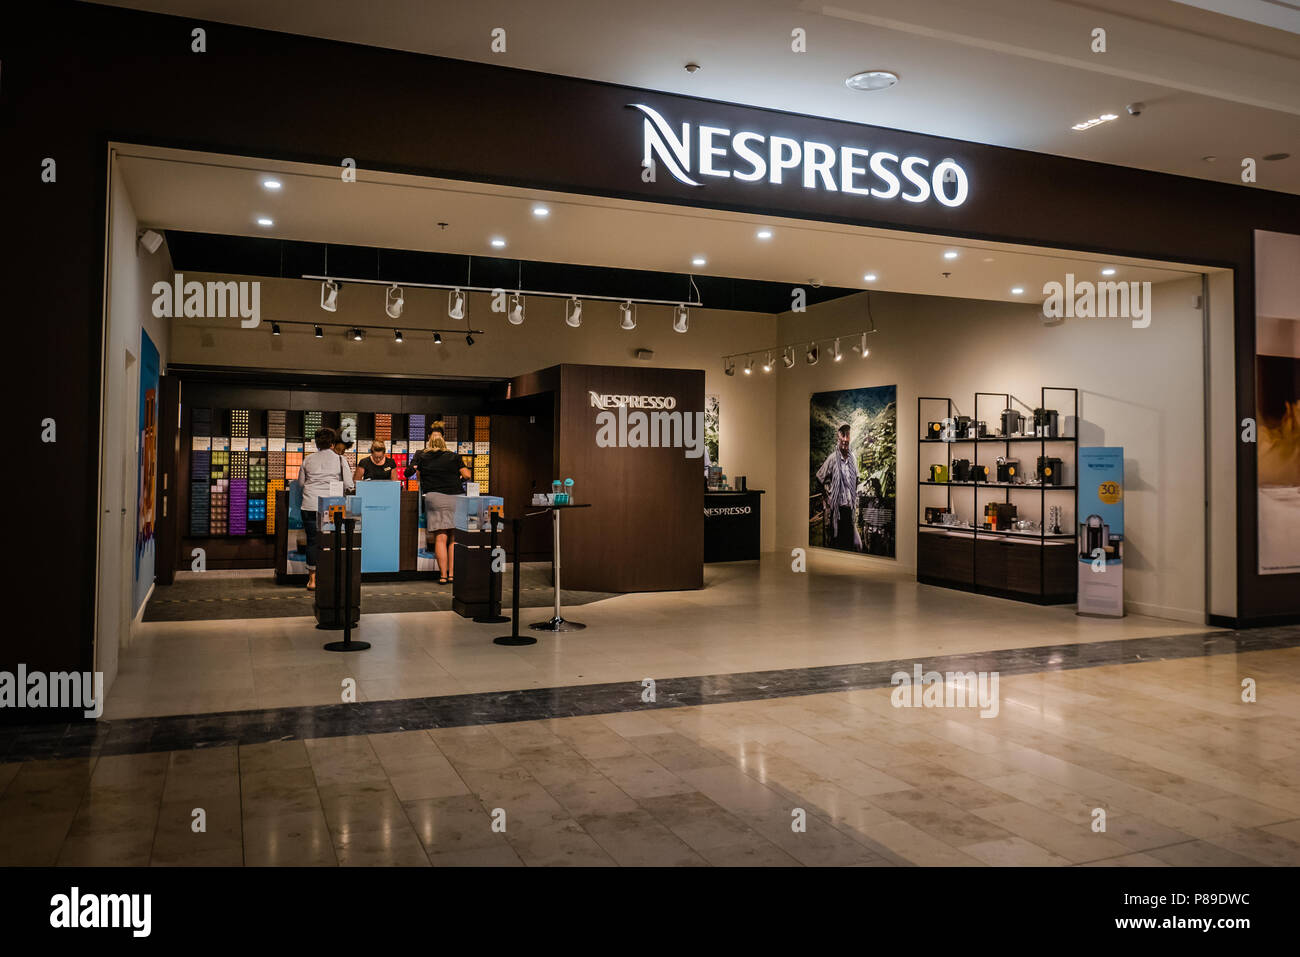 Nespresso boutique Banque de photographies et d'images à haute résolution -  Alamy